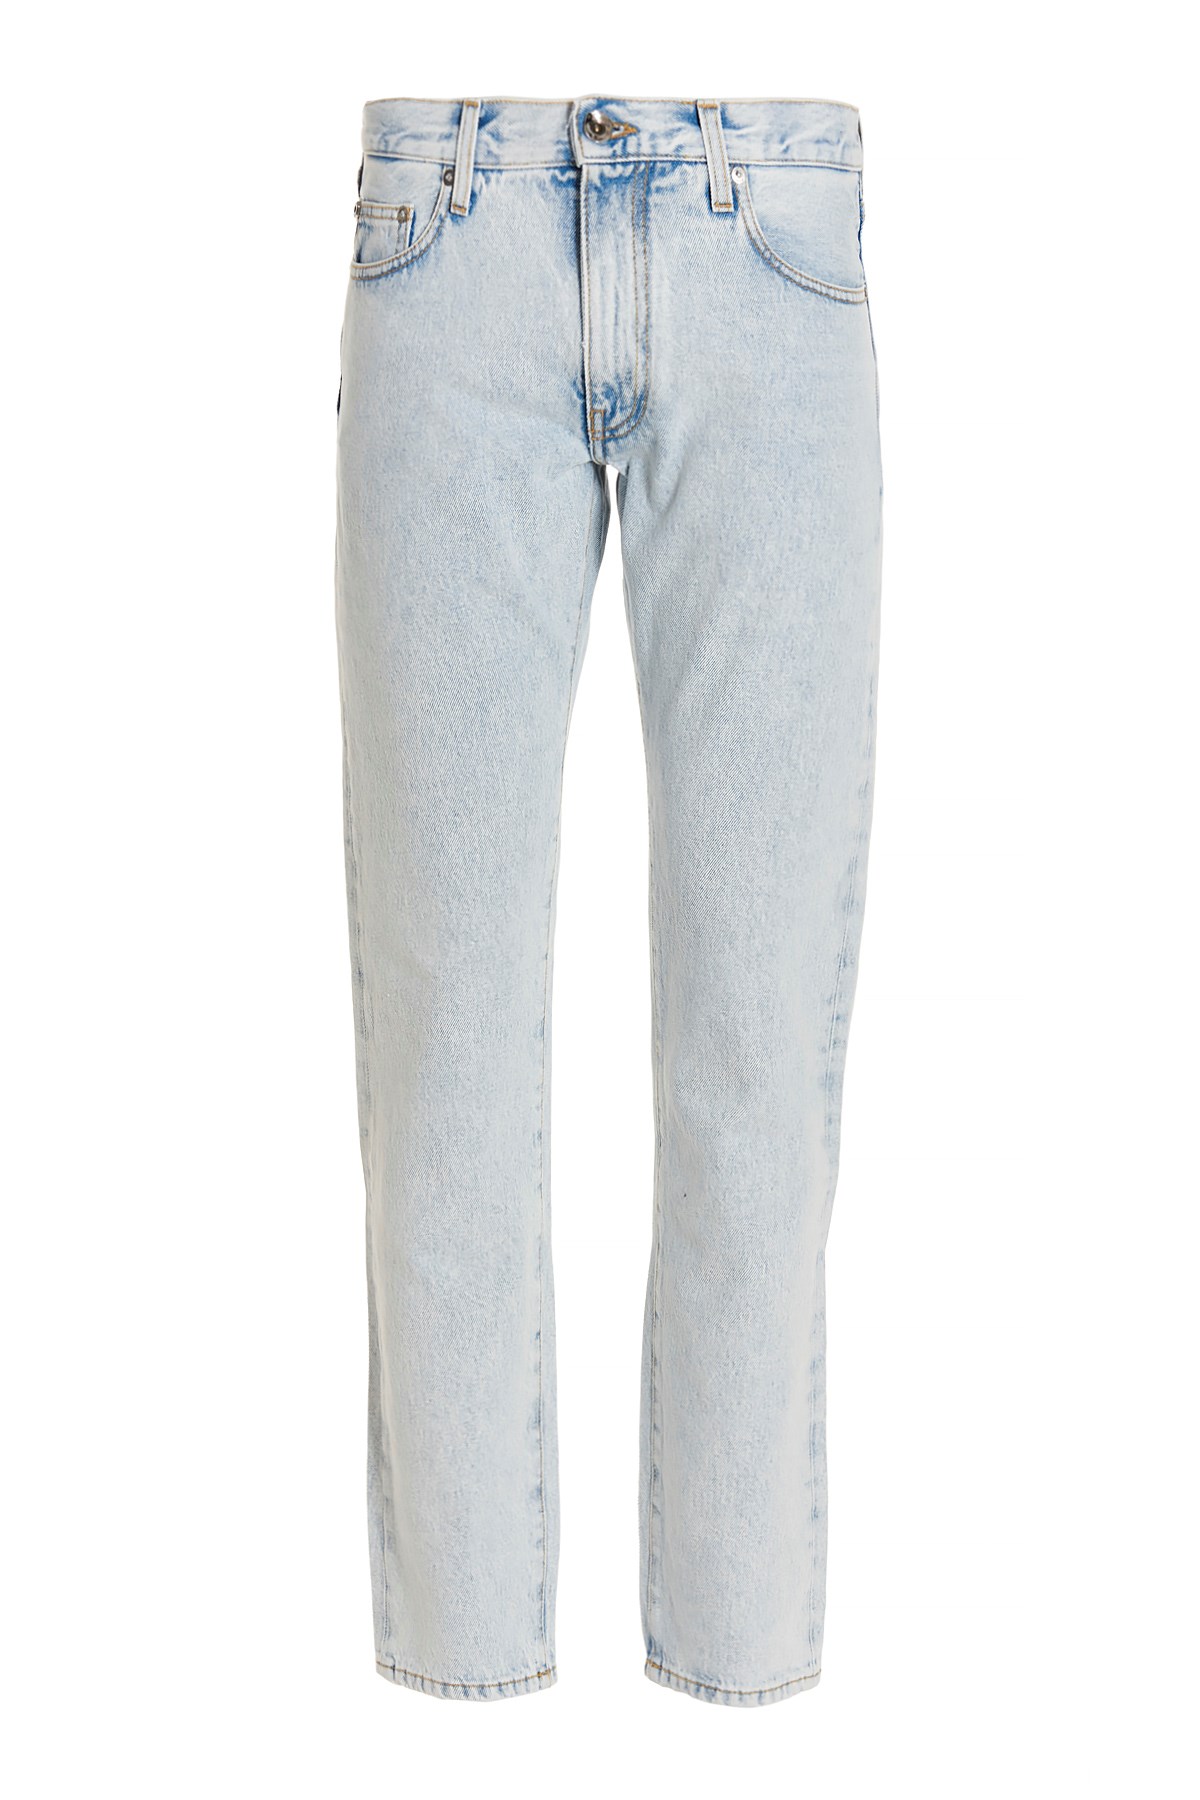 OFF-WHITE Jeans 'Diagonal'